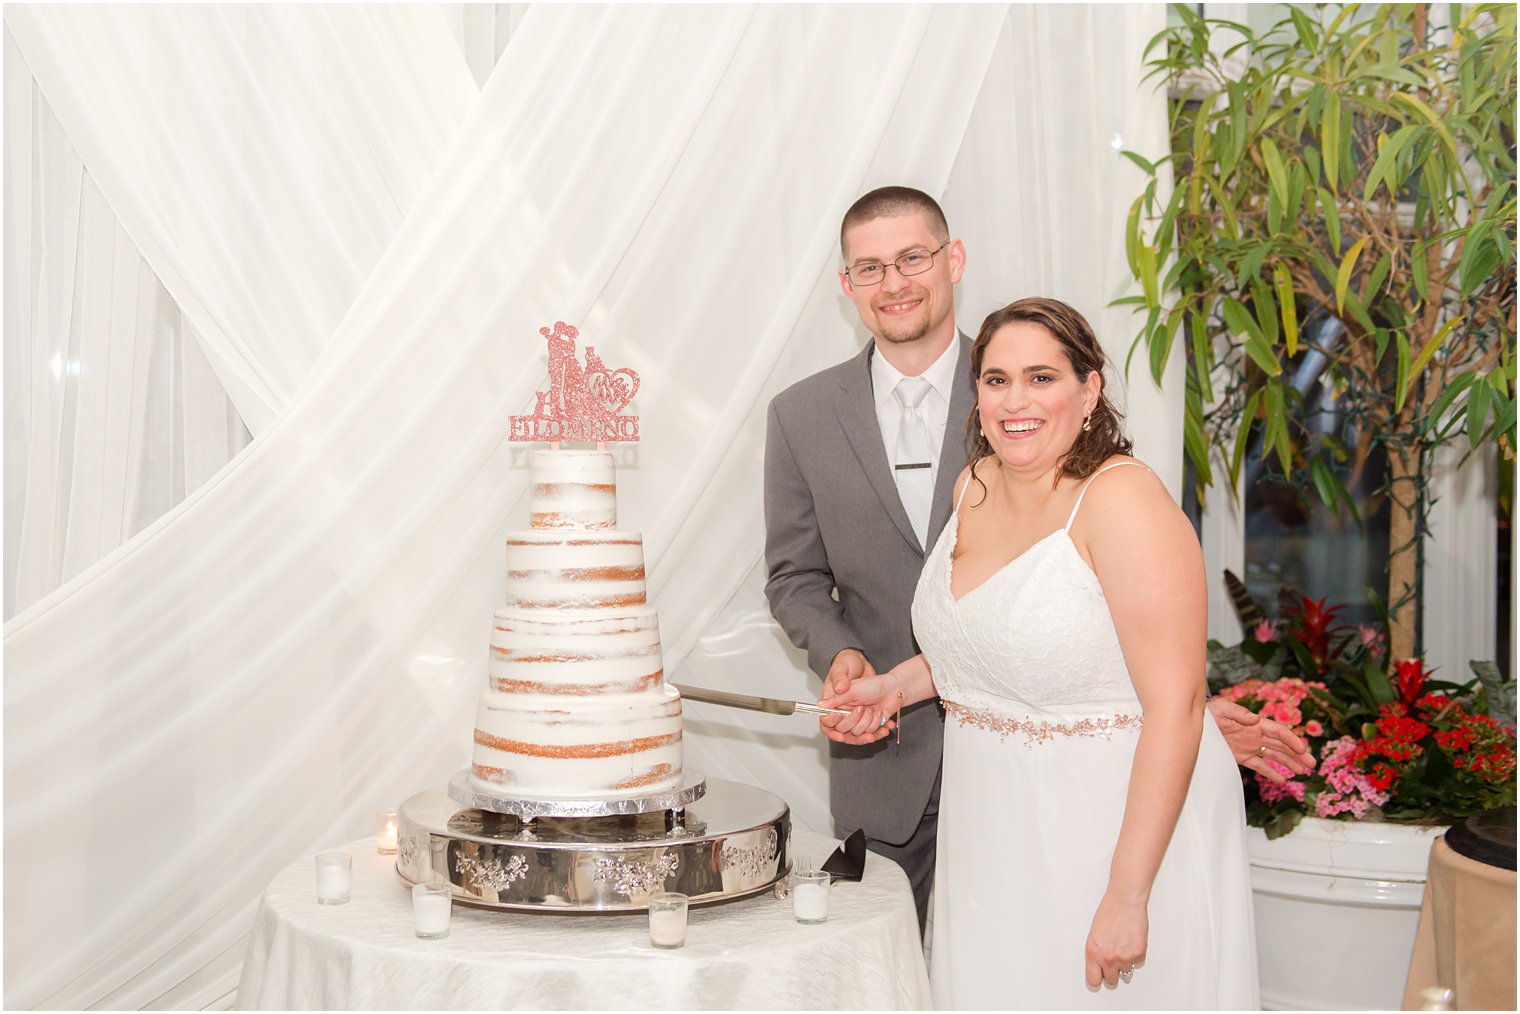 newlyweds cut wedding cake during NJ reception